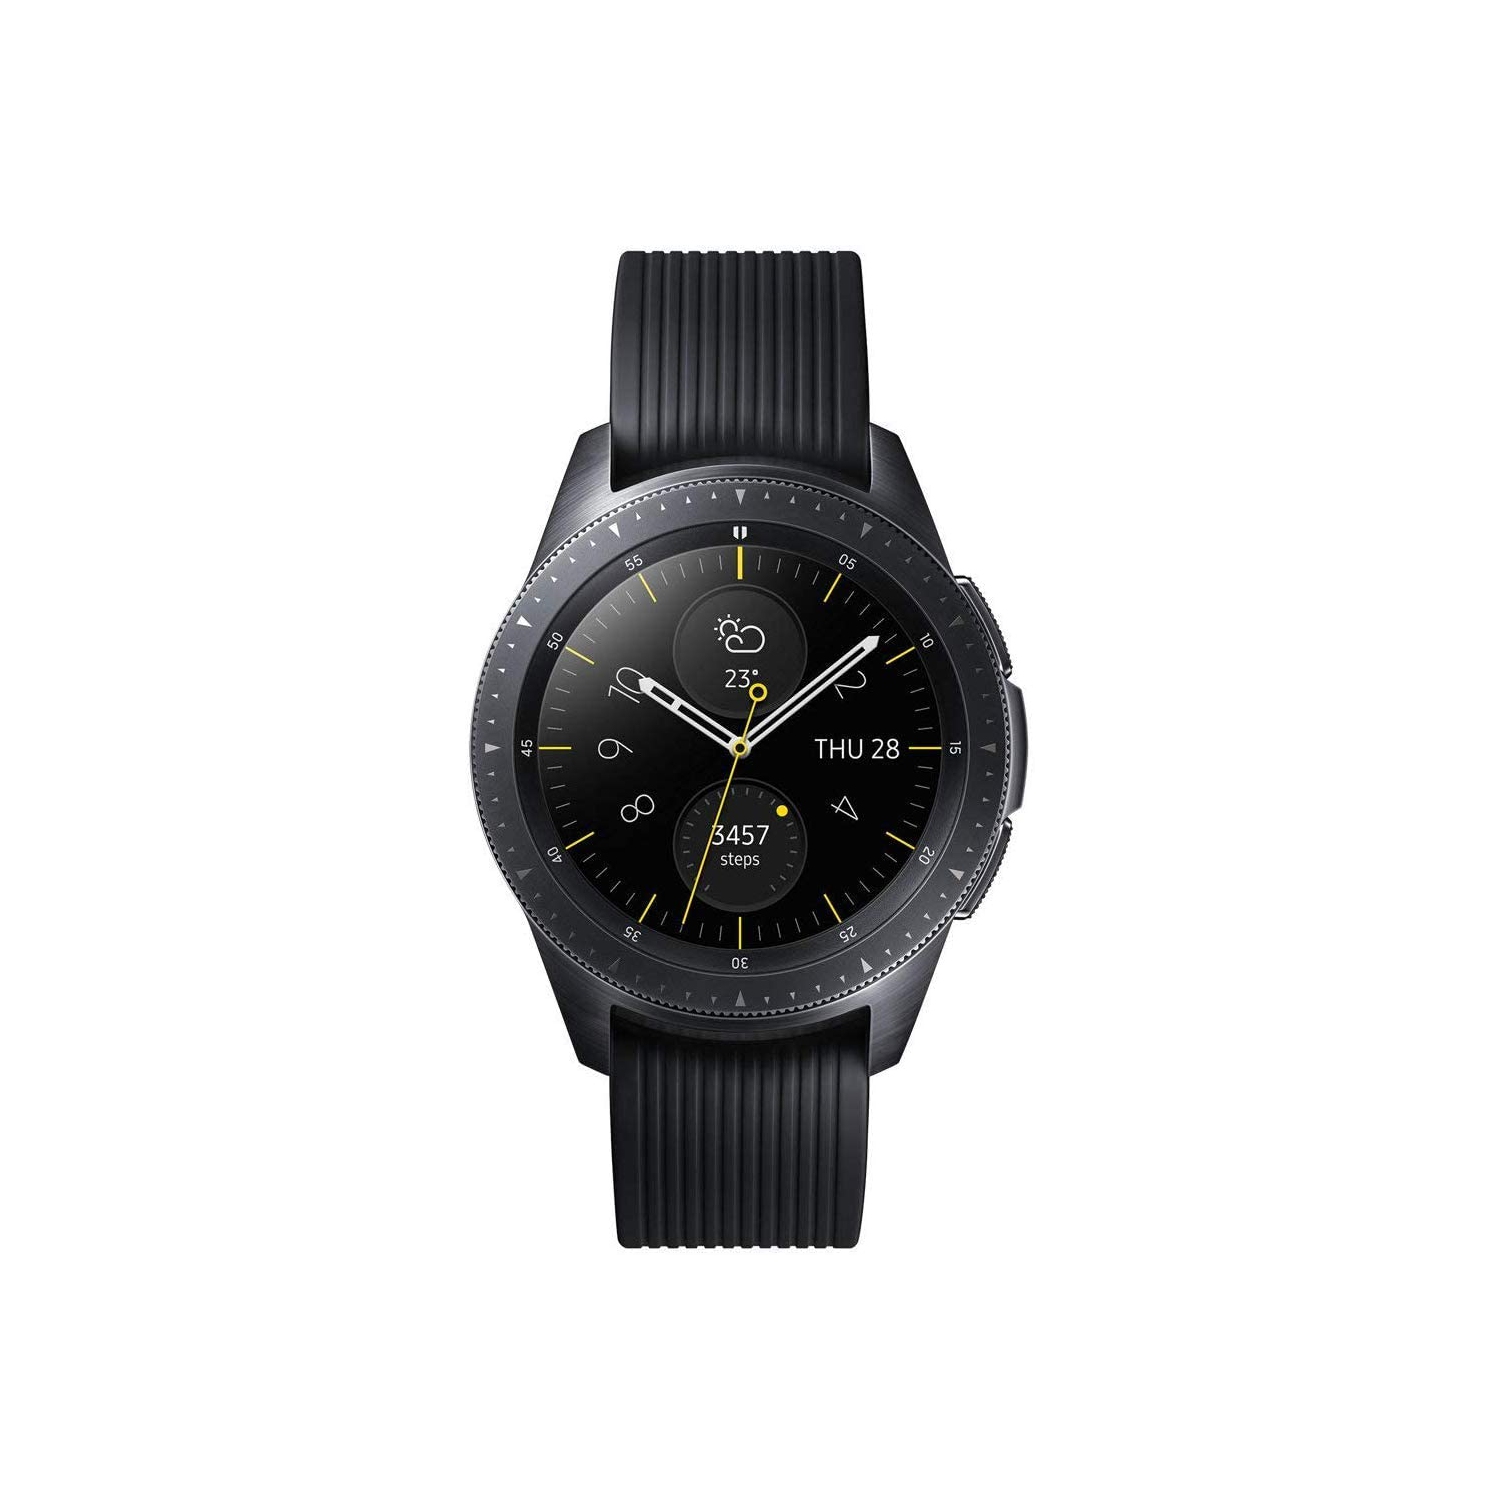 Samsung Galaxy Watch (42mm) Black (Bluetooth), SM-R810 - Unlocked - Refurbished